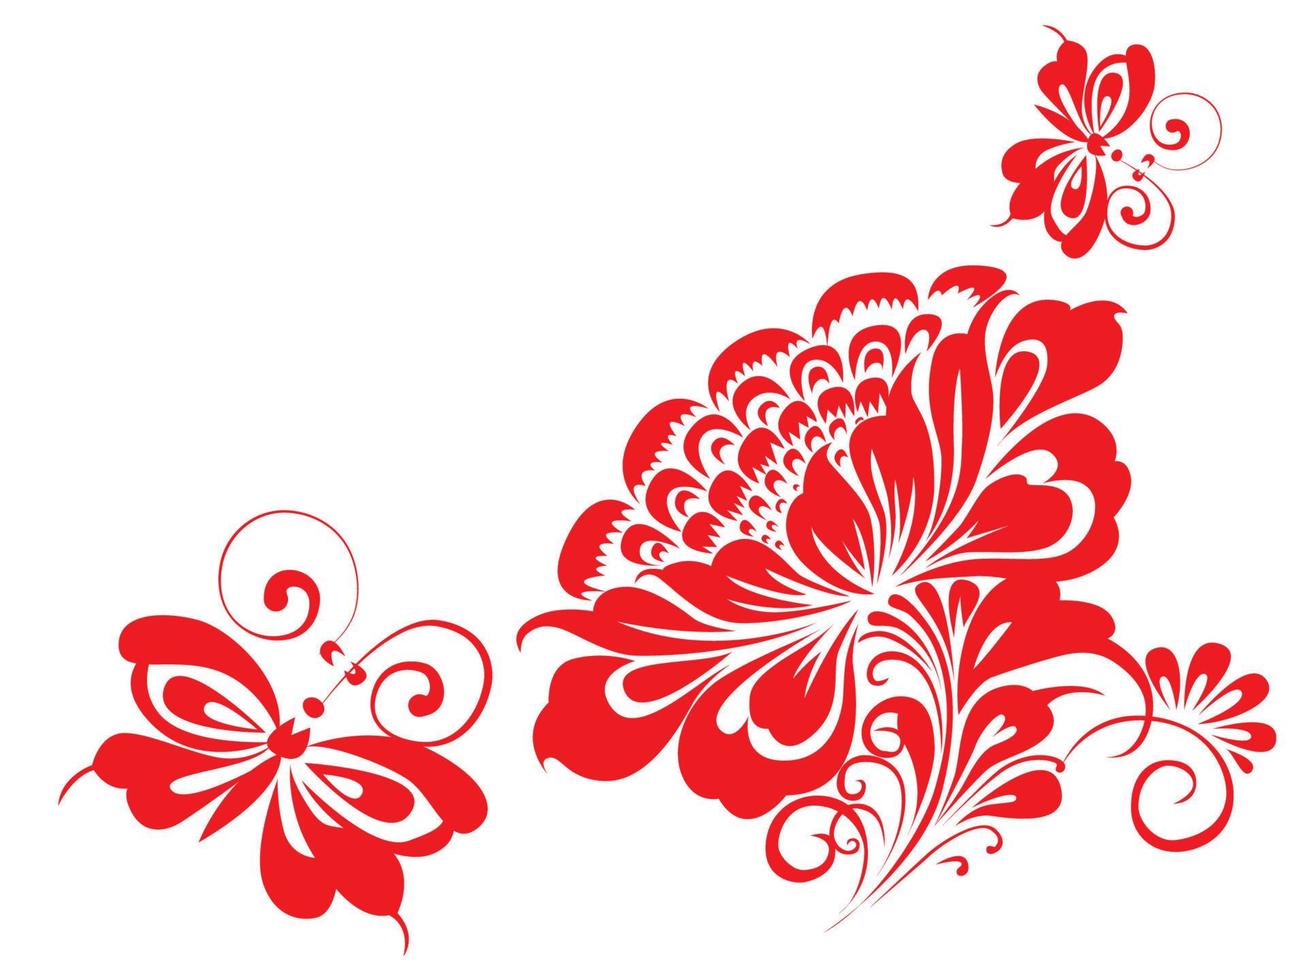 ukraine peinture au pinceau traditionnelle fleurs folkloriques couronne ronde pour carte, en-tête, invitation, affiche, médias sociaux, post-publication. affiche de vecteur